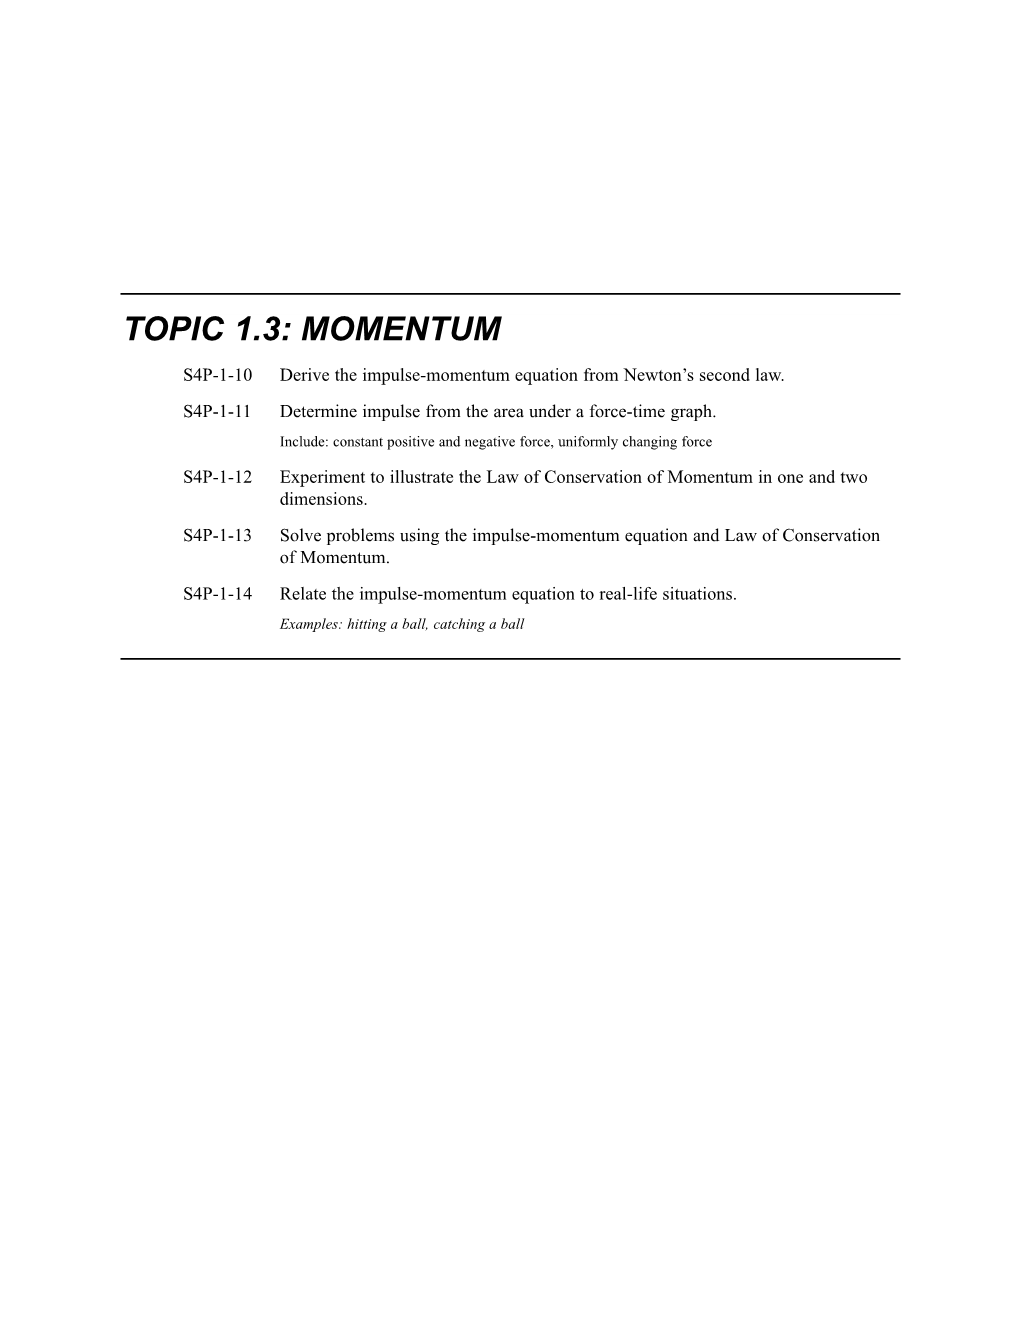 Topic 1.3: Momentum